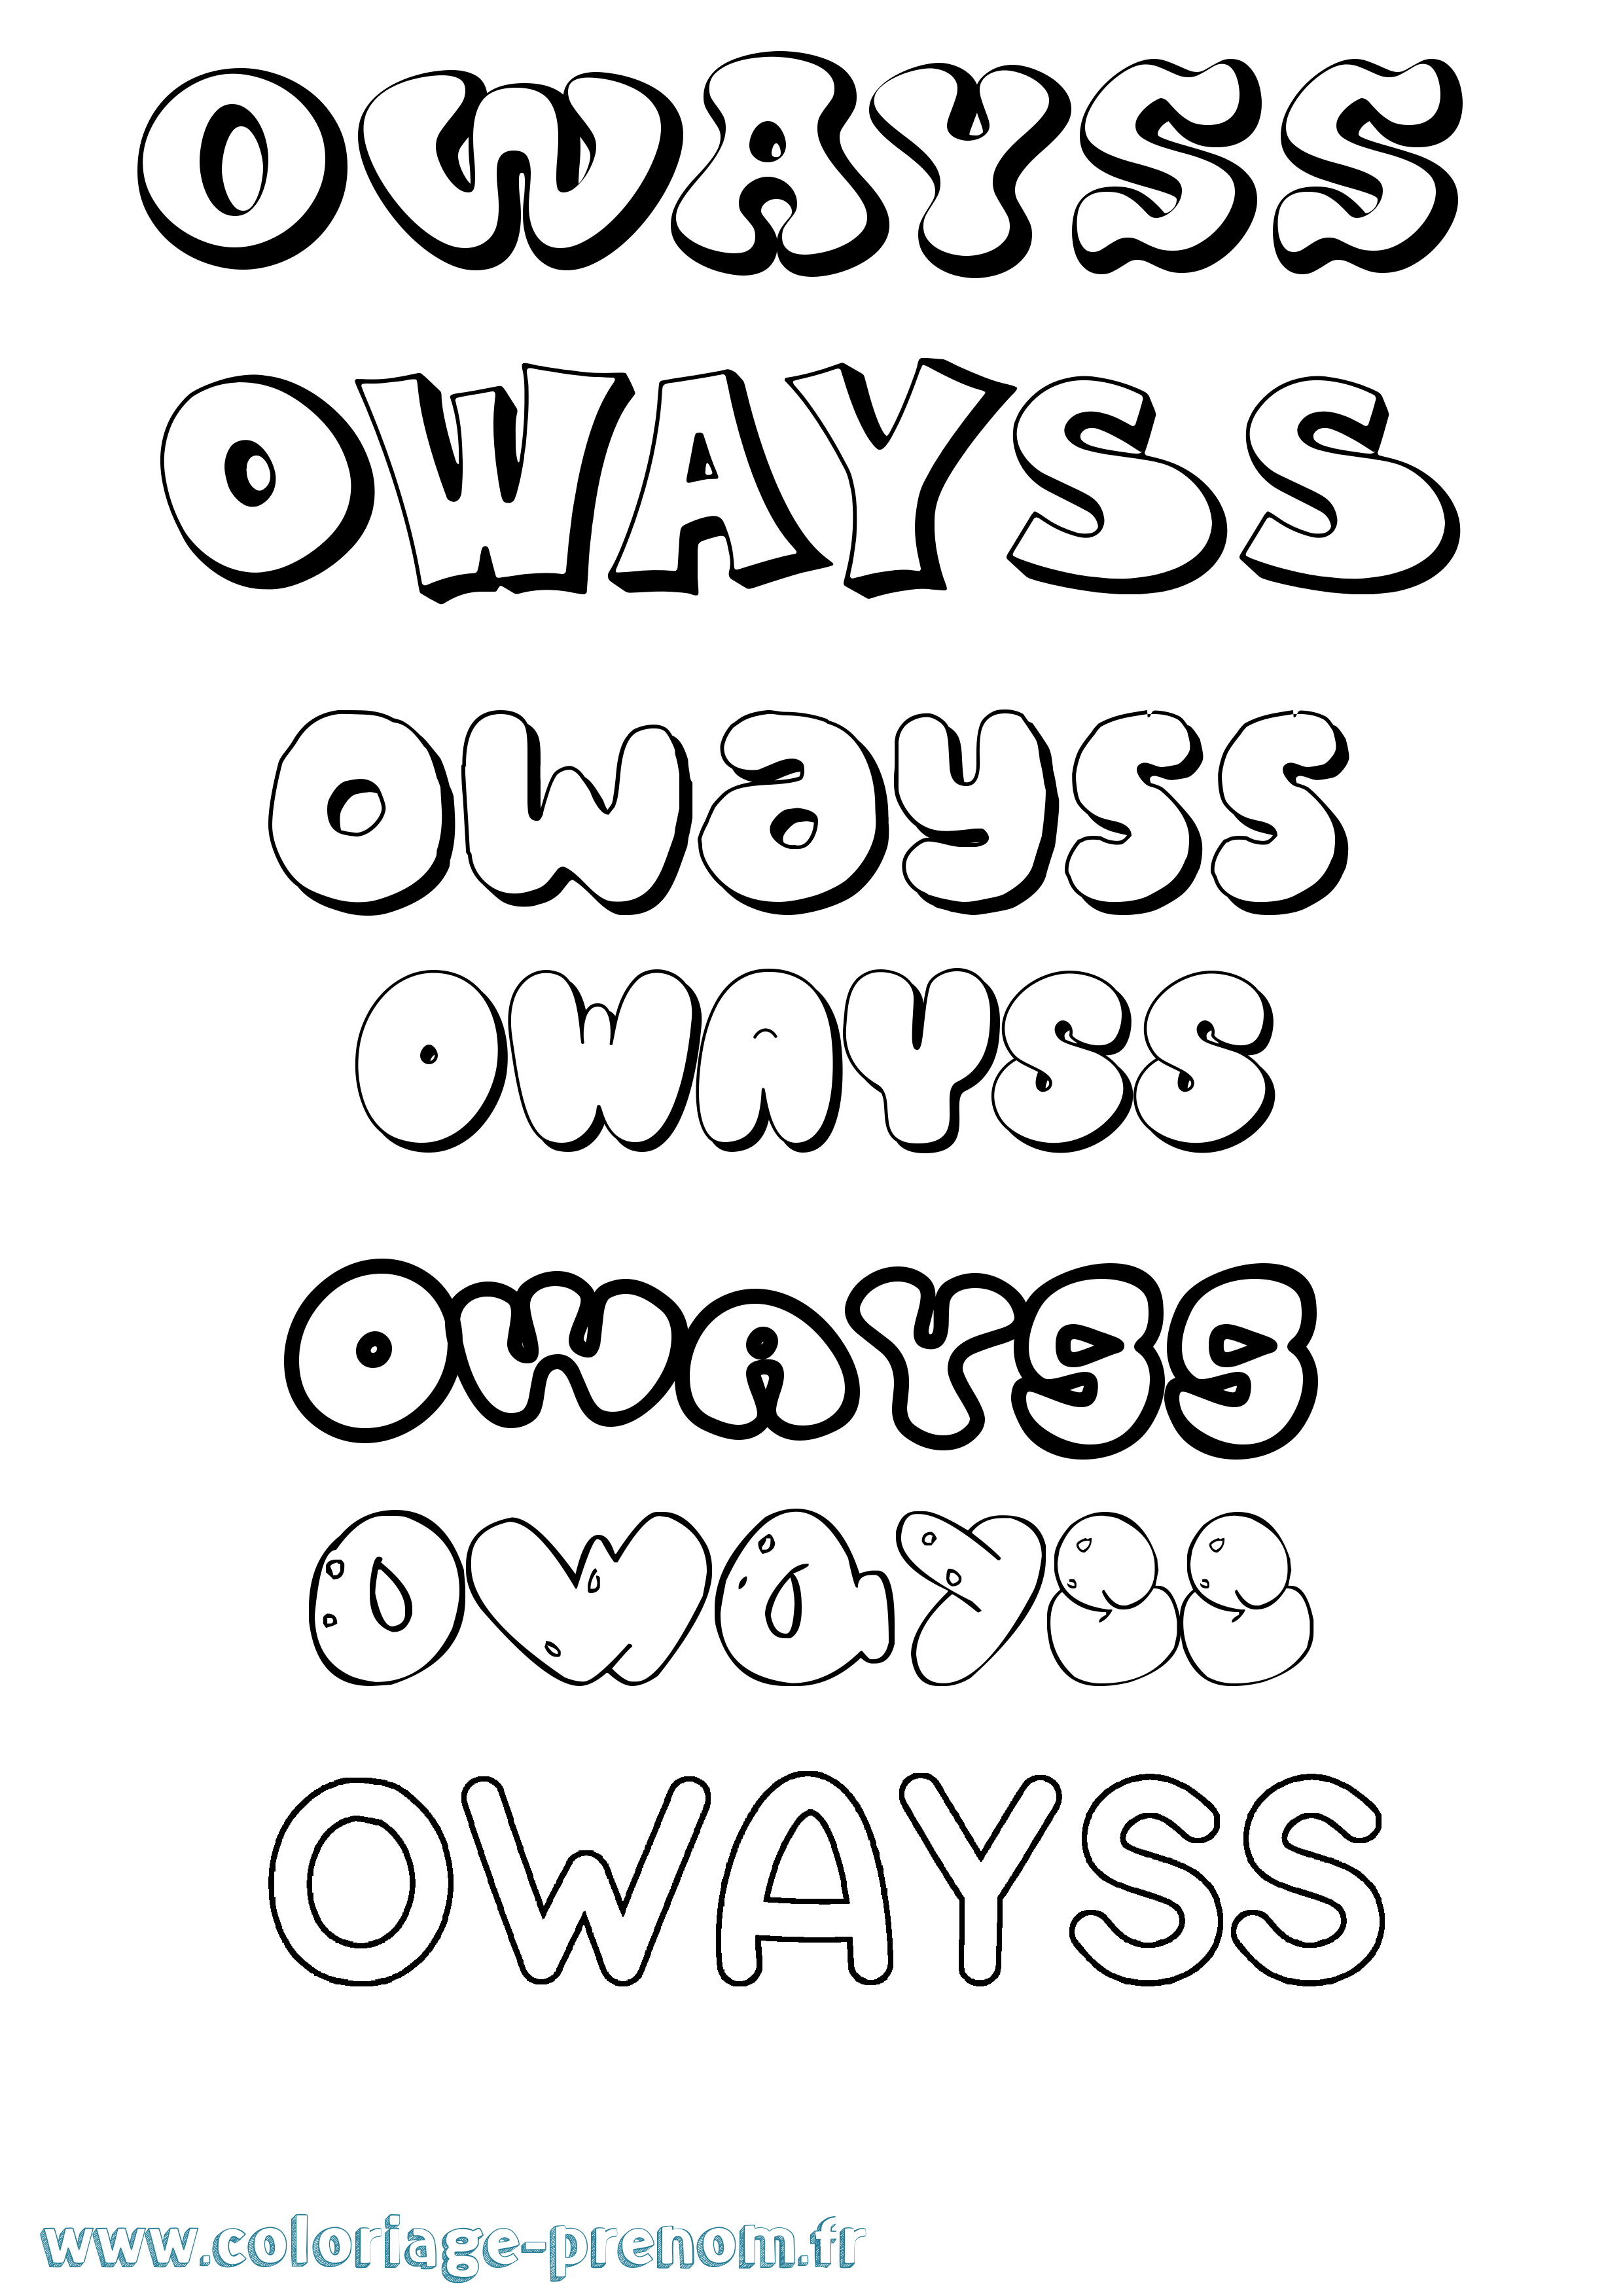 Coloriage prénom Owayss Bubble